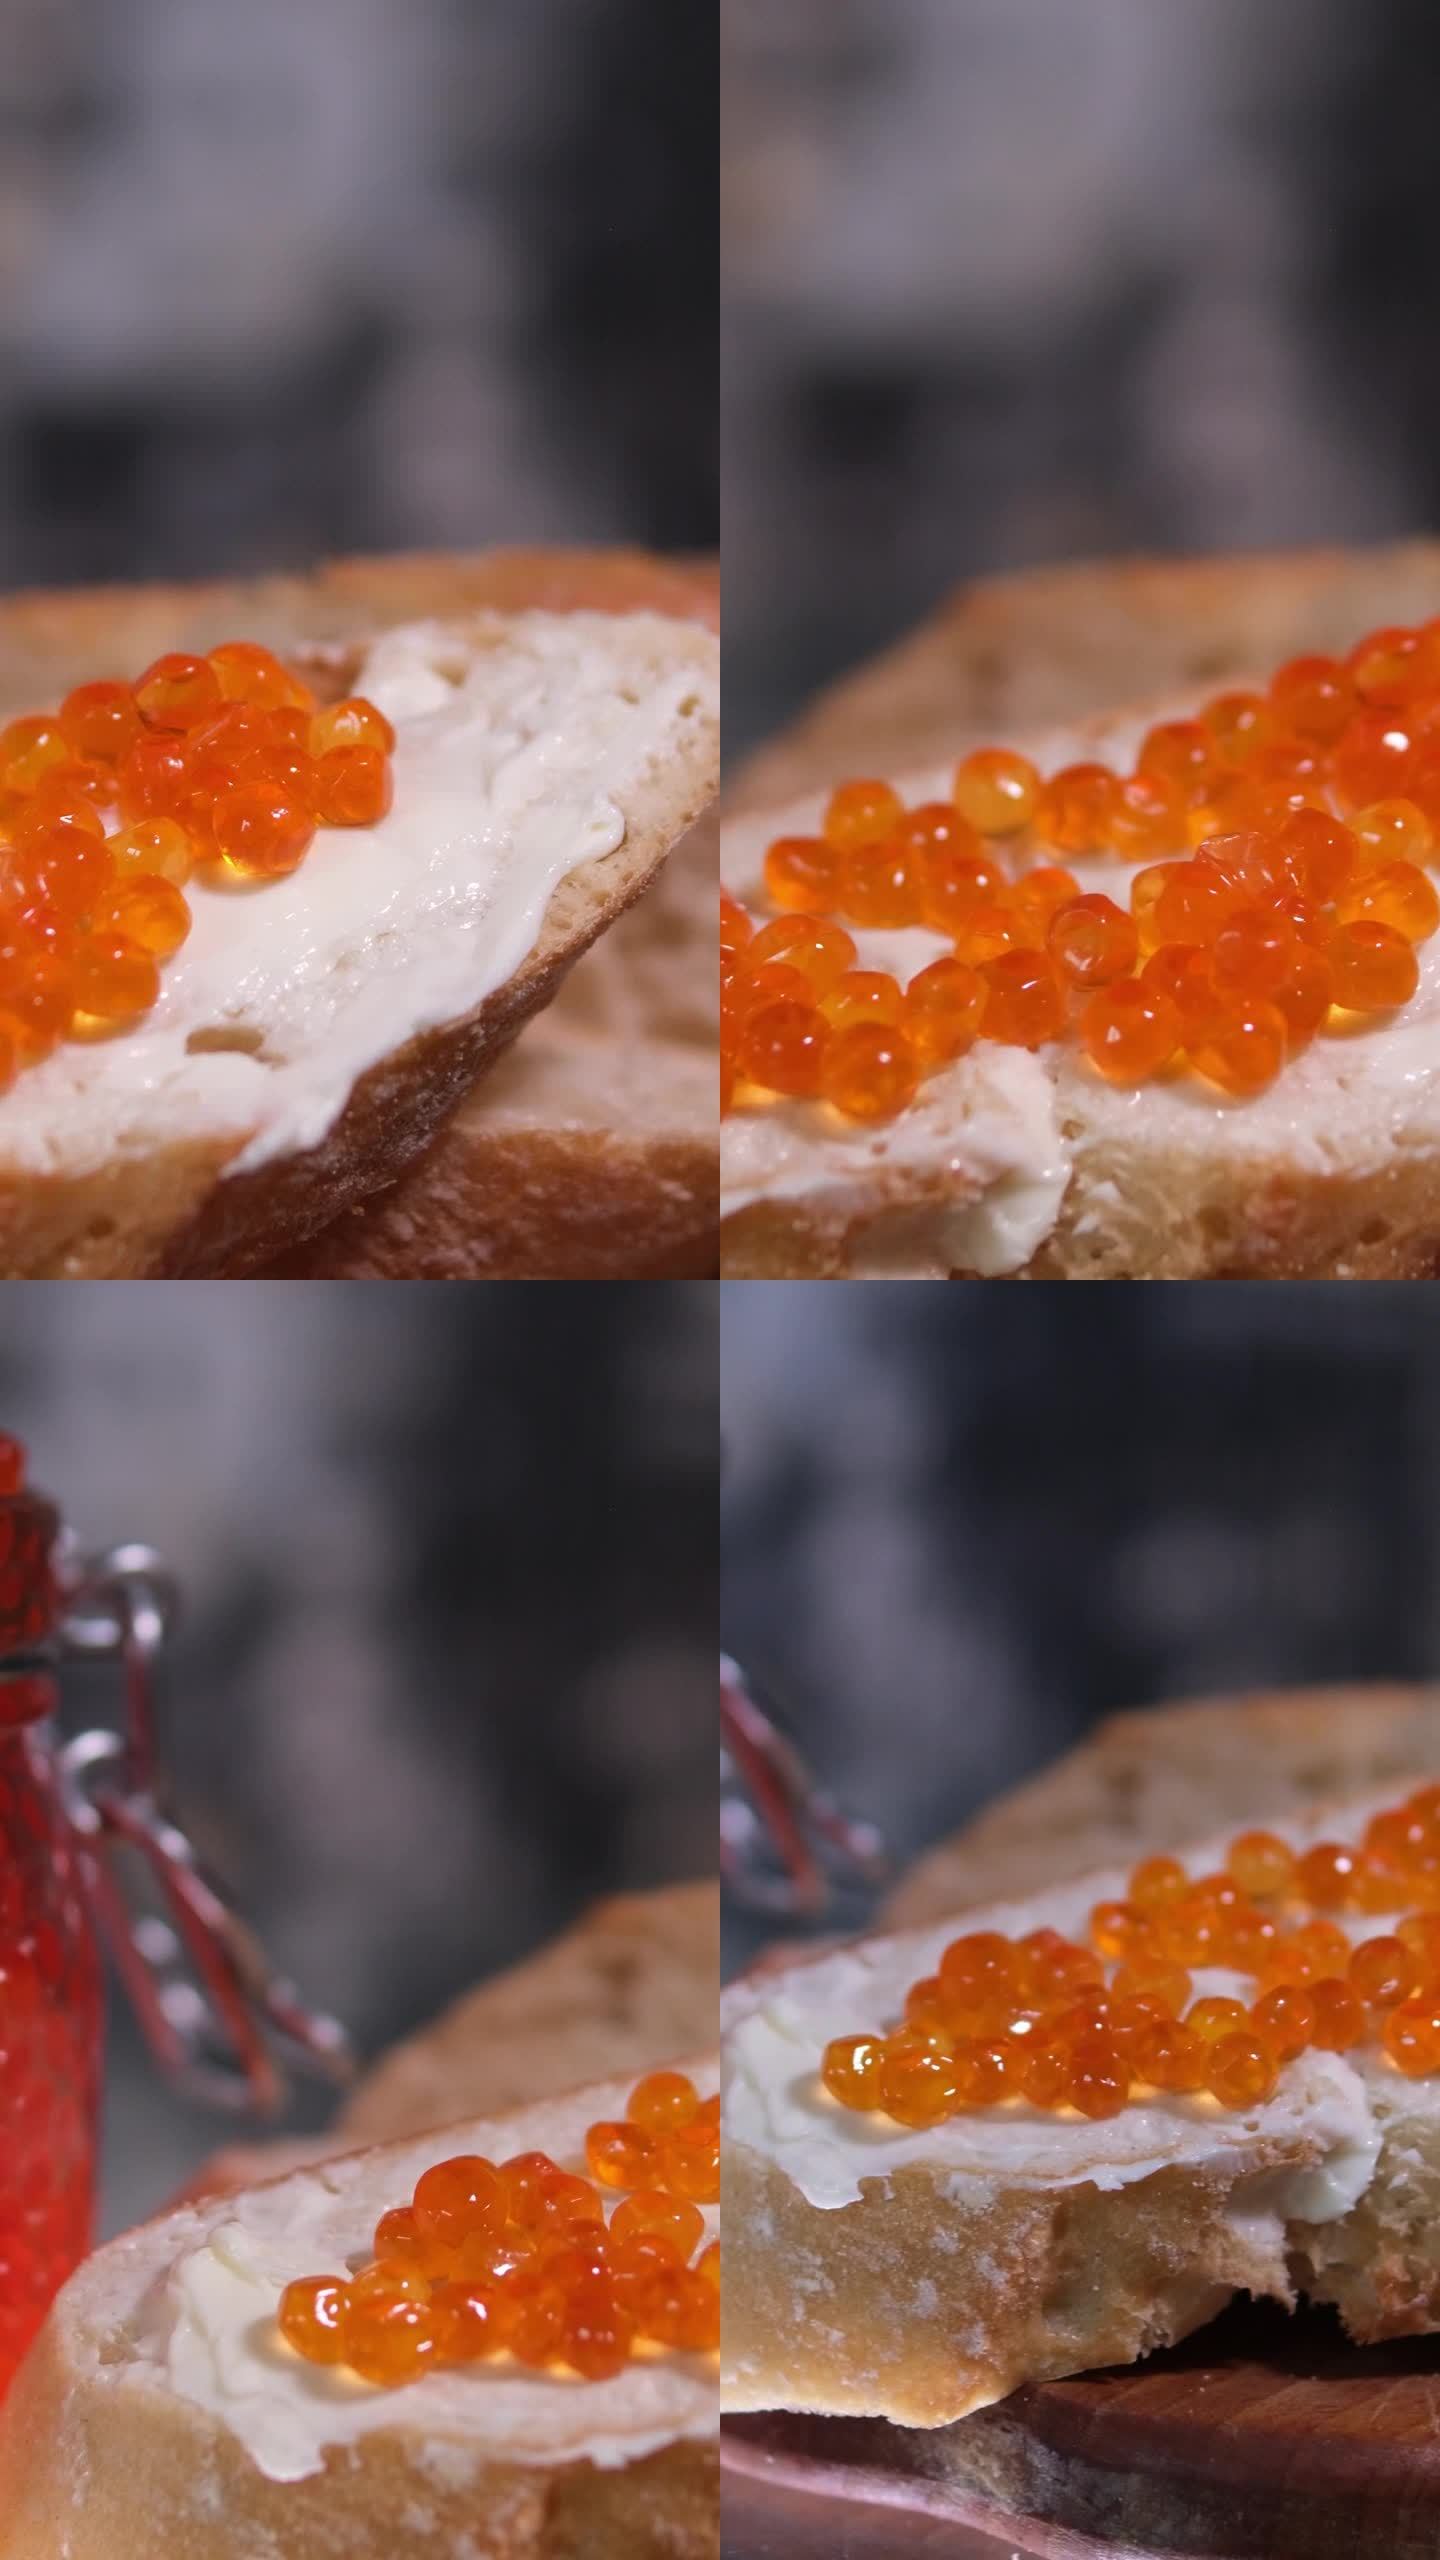 用刀把黄油涂在面包上背景是一个装有鱼子酱的玻璃罐切成薄片的法棍面包配鲑鱼鱼子酱和黄油，美味的面包黄油